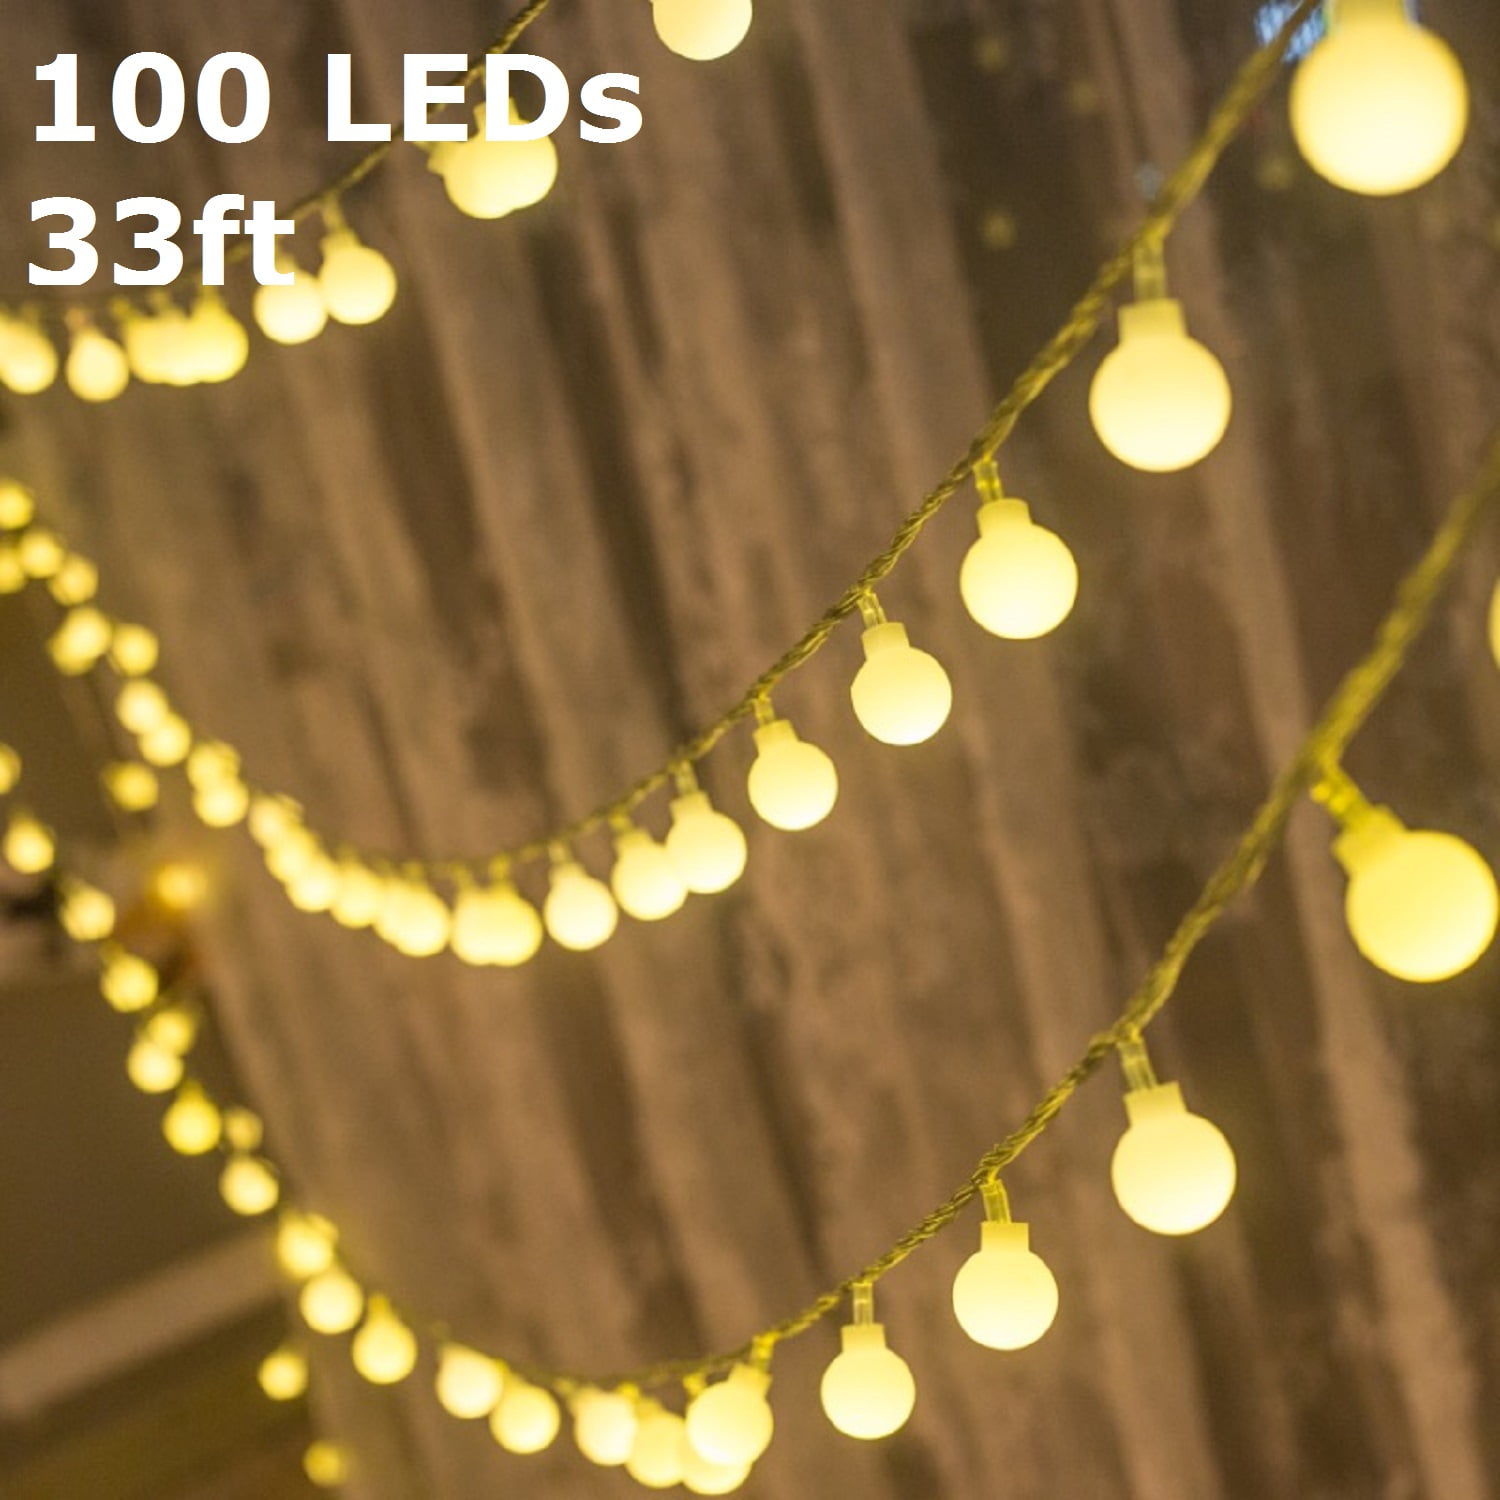 30/100 LED Solar Fairy String Light Outdoor Garden Wedding Lamp Decor Party Z4Y7 